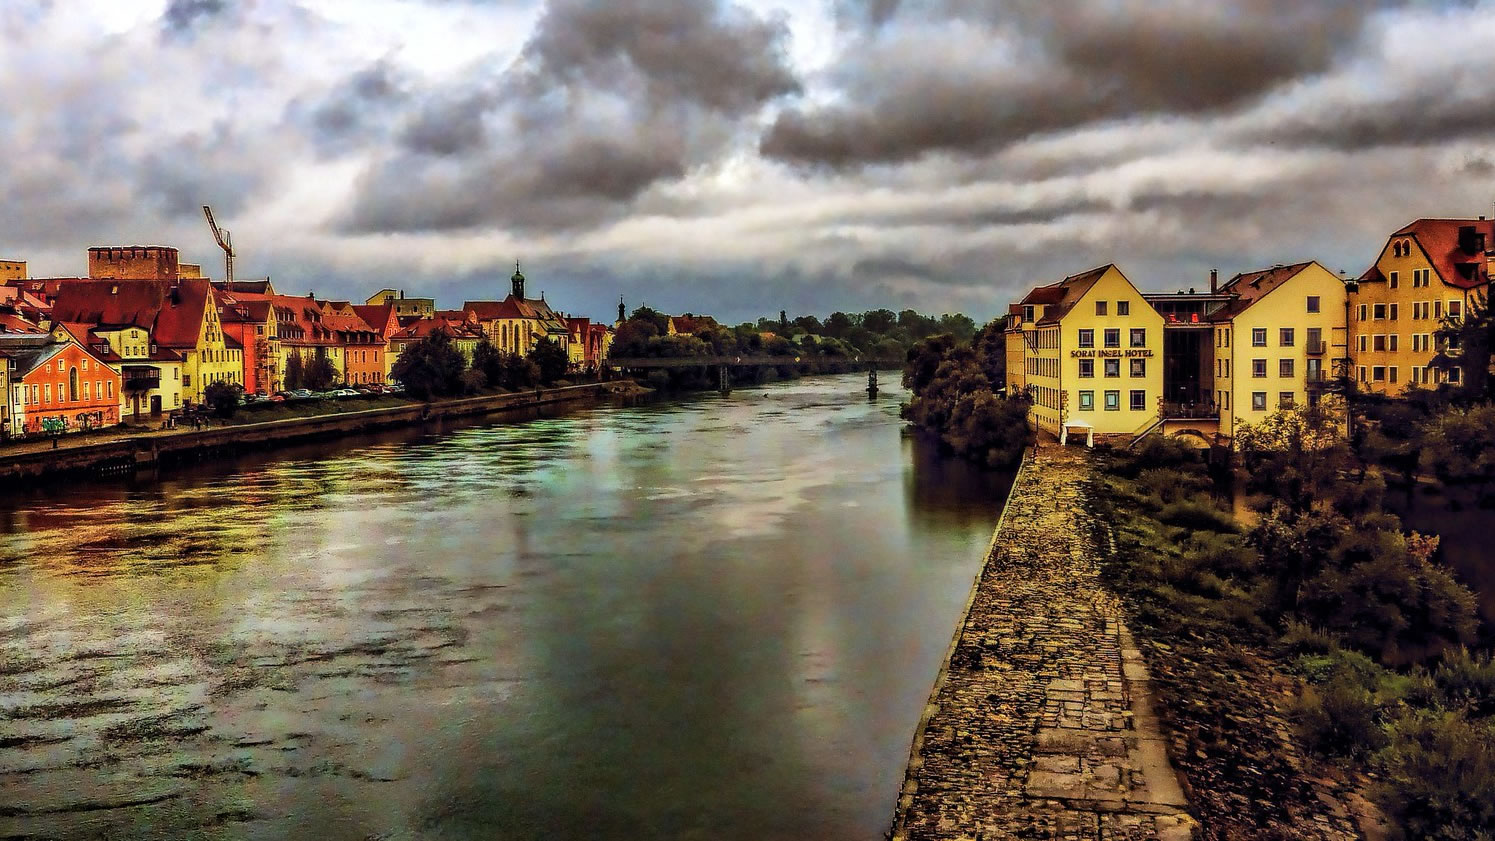 Regensburg. Photo: flickr / Mariano Mantel